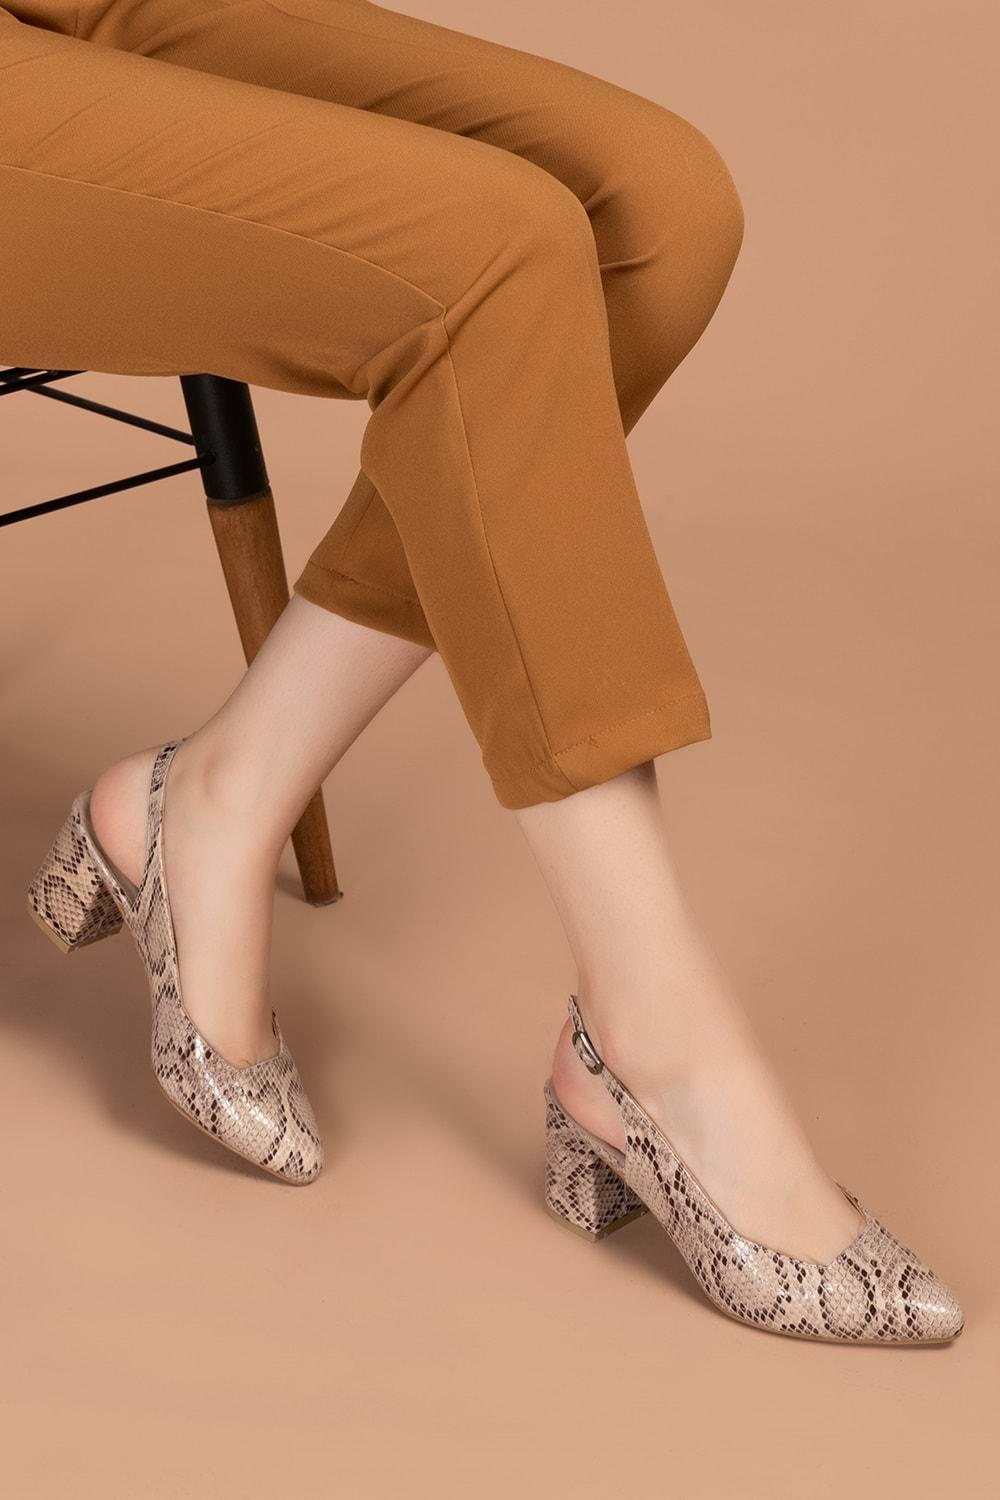 Gondol Kadın Hakiki Deri Yılan Desenli Topuklu Ayakkabı şhn.709 - Vizon Yılan - 41